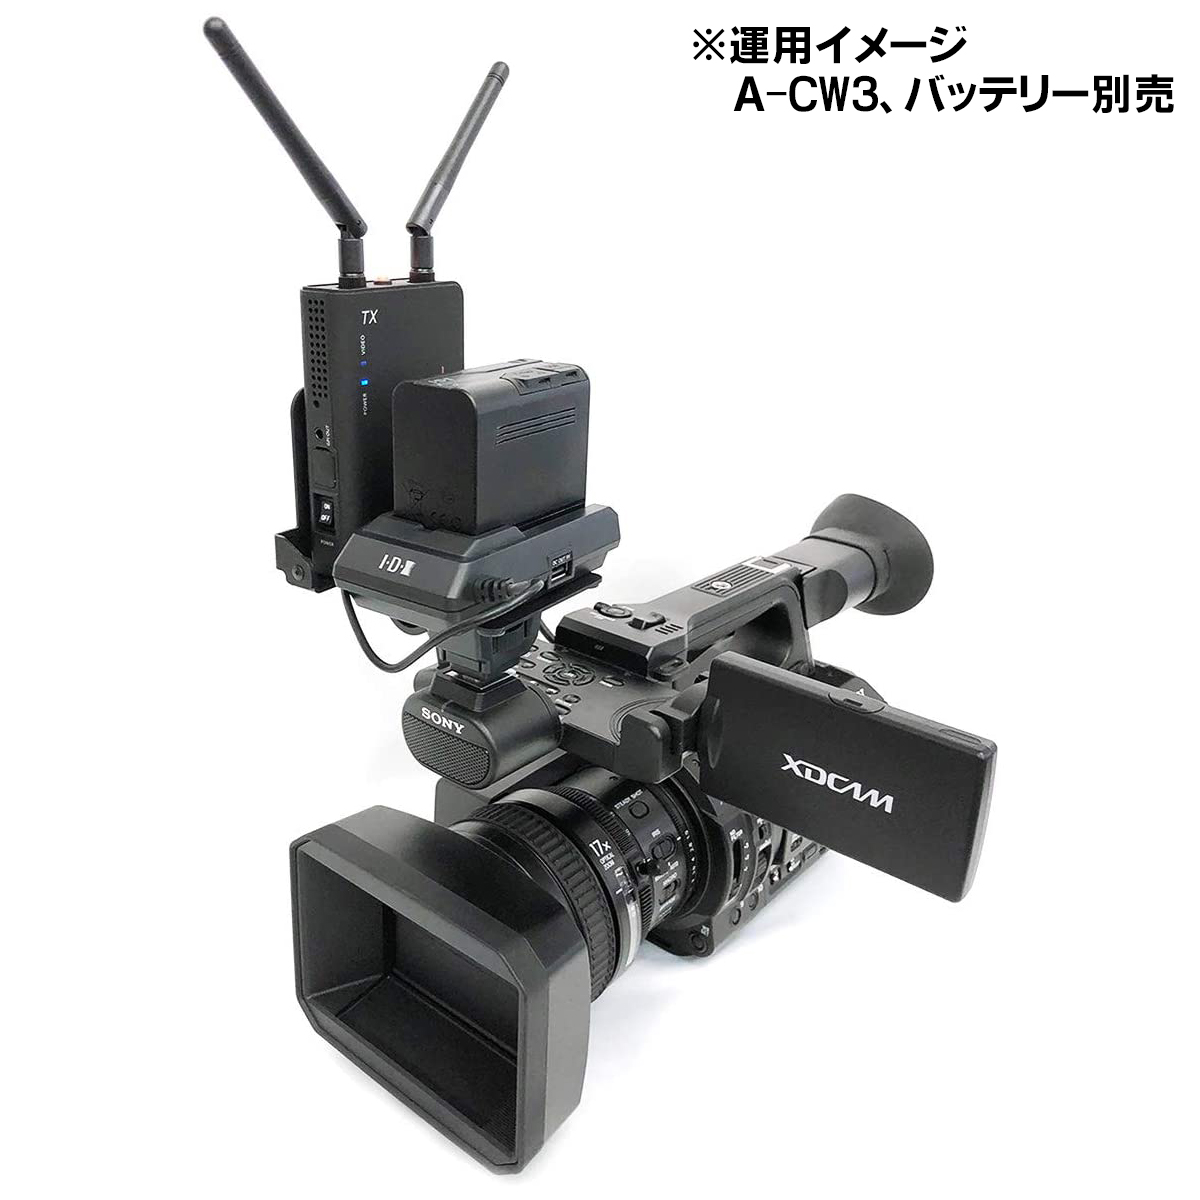 新品》IDX CW-3 ワイヤレスHDビデオ伝送システム カメラ・ビデオカメラ